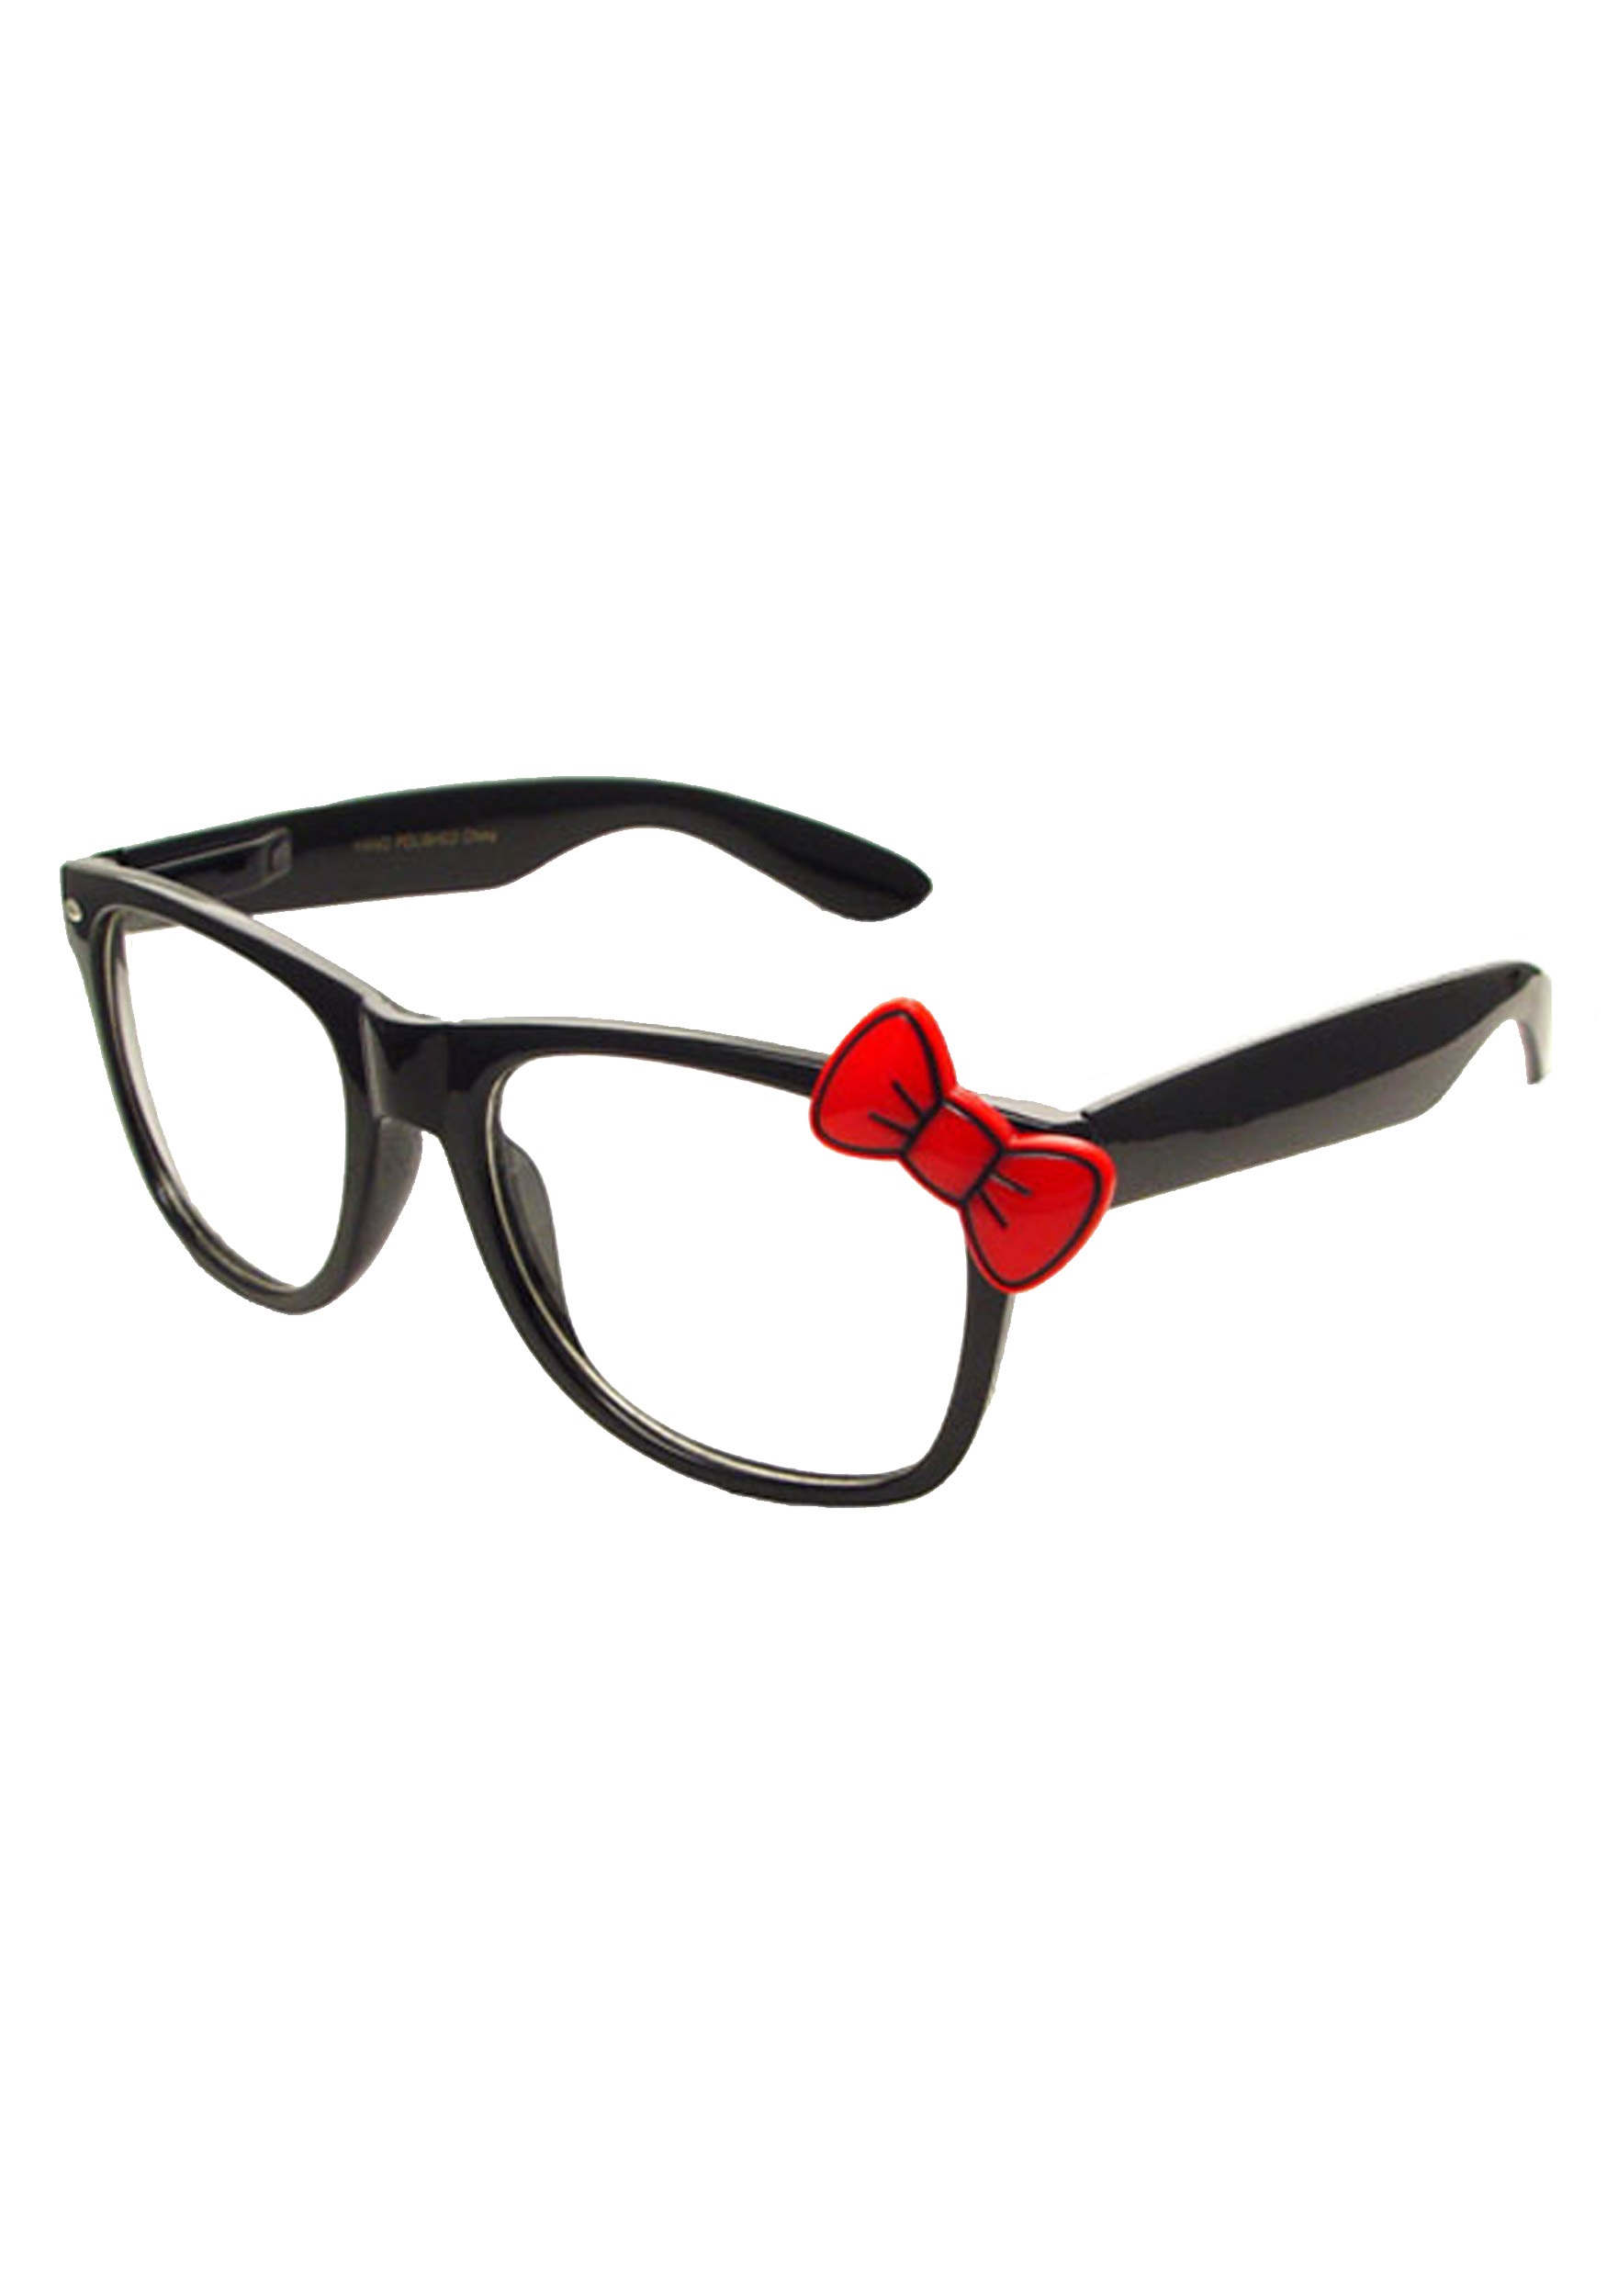 Очки Хелло лук. Очки с Хэллоуин Китти. Очки черный красный фиолетовый. Собаки лалафанфан вещи очки без стекла черные.